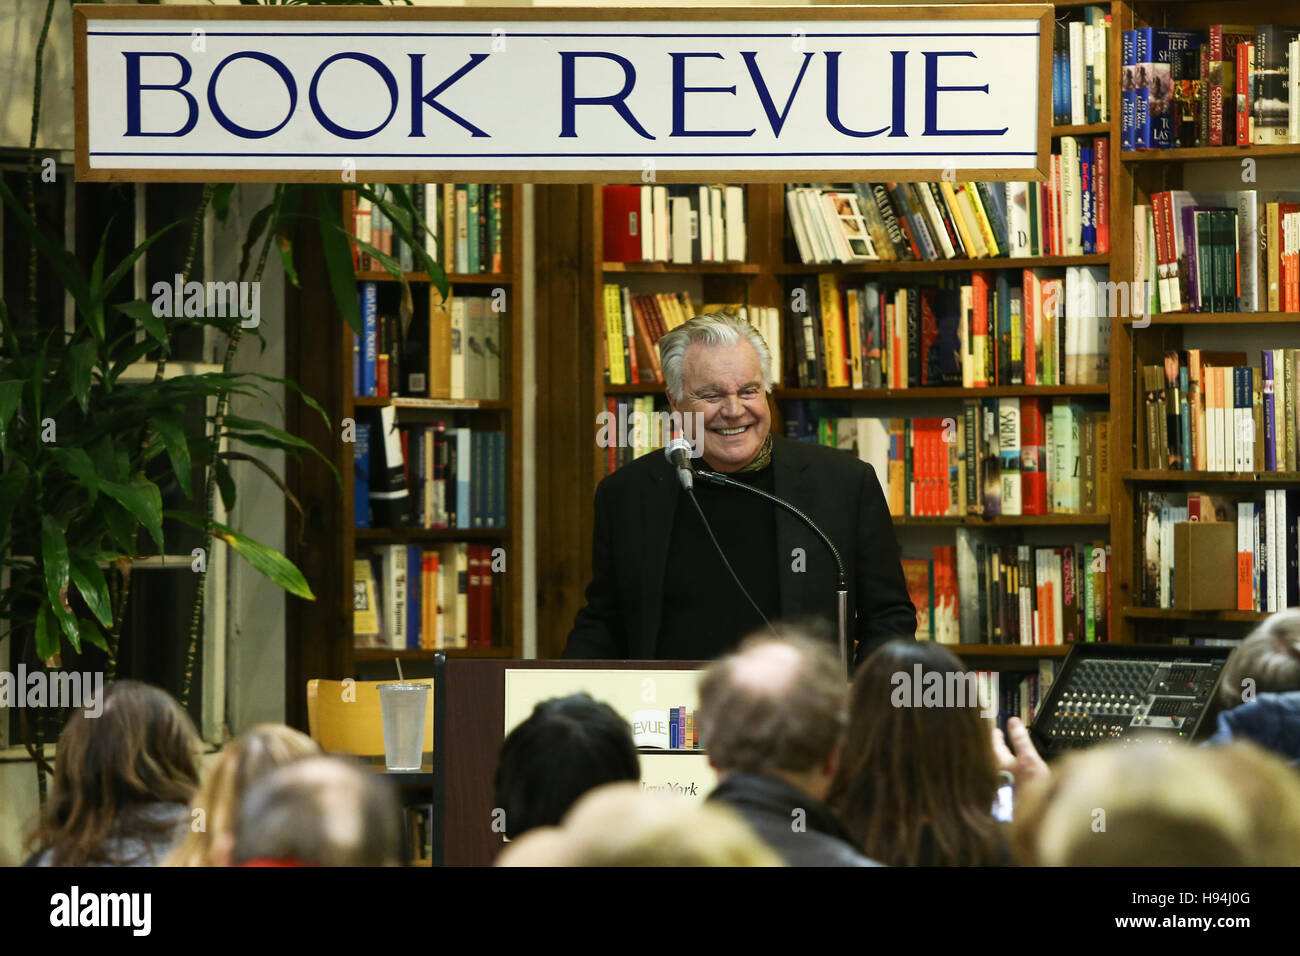 HUNTINGTON-NOV 15: Schauspieler Robert Wagner Zeichen Kopien von seinem Buch "Ich liebte sie In den Filmen" am 15. November 2016 bei Buch Revue in Huntington, New York Stockfoto